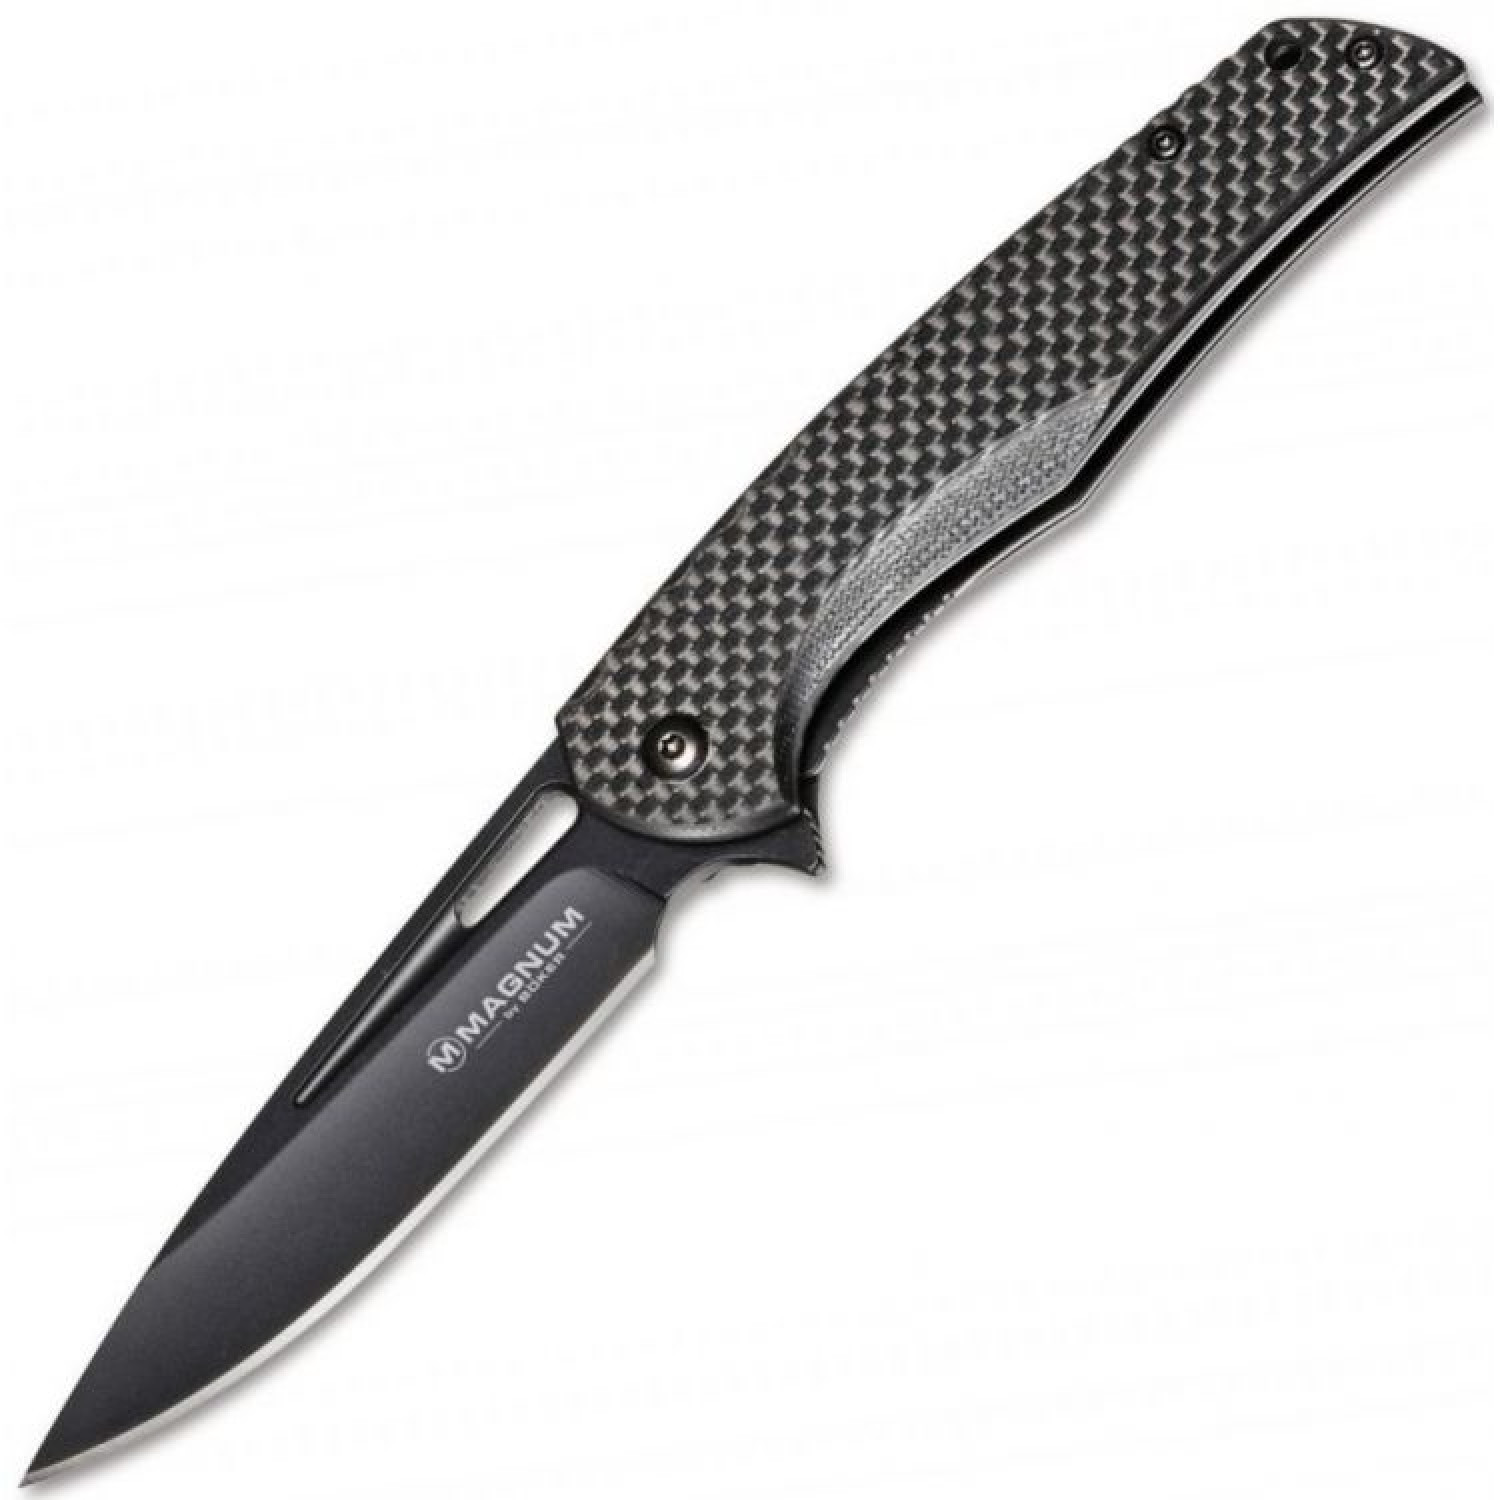 Нож складной Magnum Black Carbon, Boker 01RY703, сталь 440A EDP Plain, рукоять карбон, чёрный, Бренды, Magnum